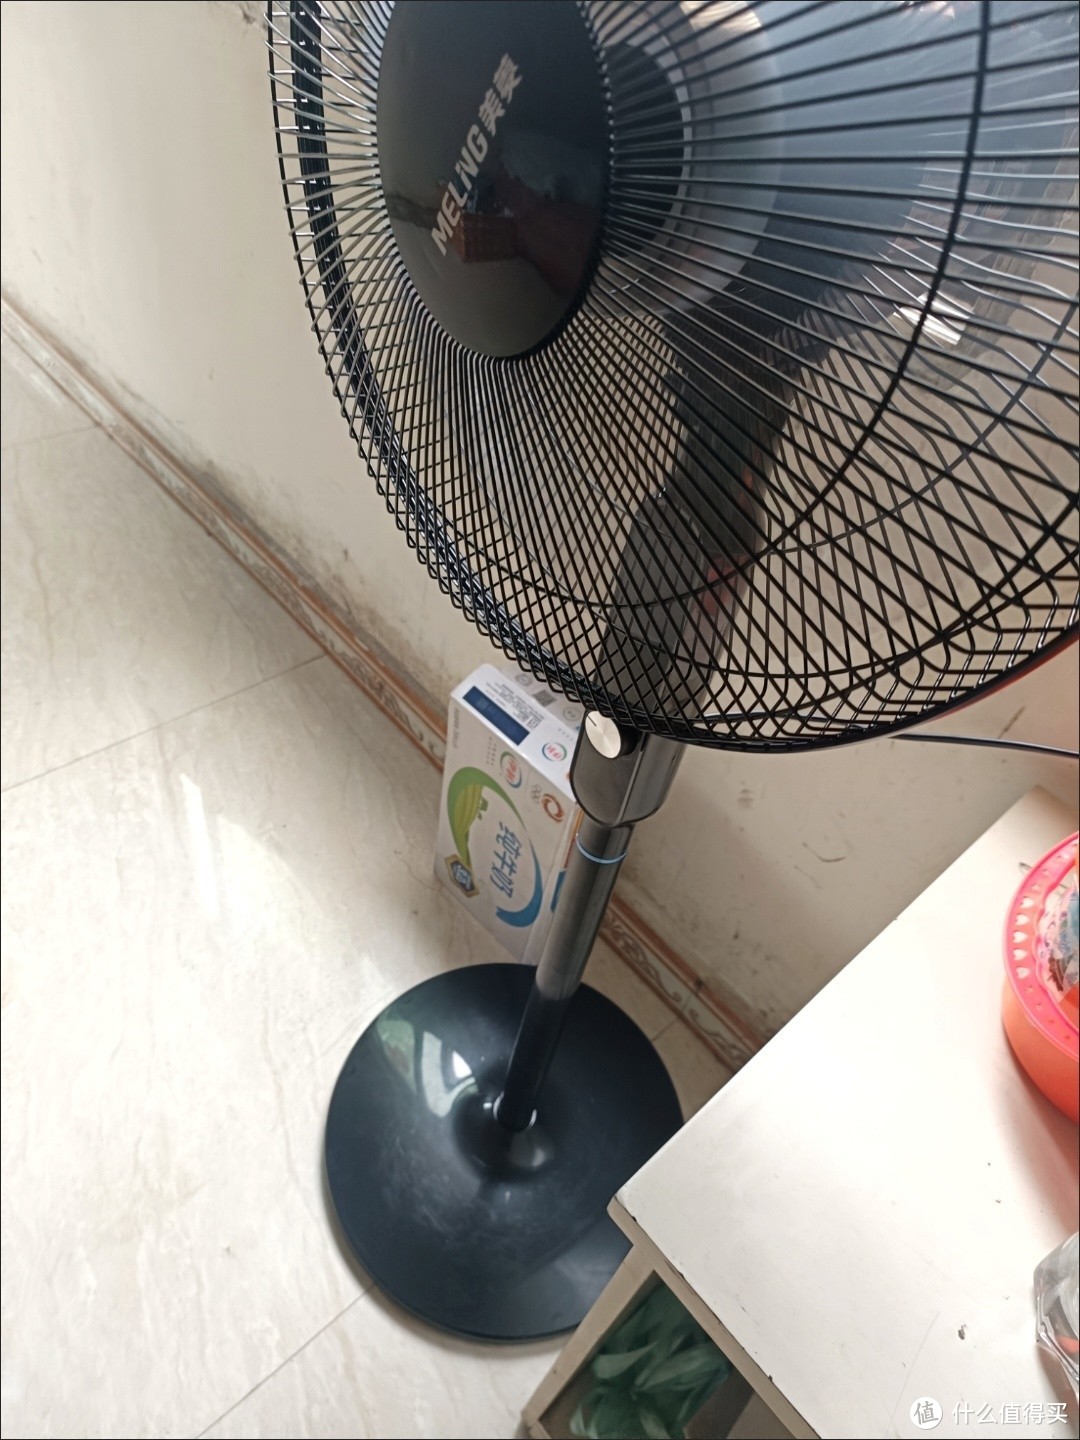 炎热的季节用电风扇好还是空调好呢？